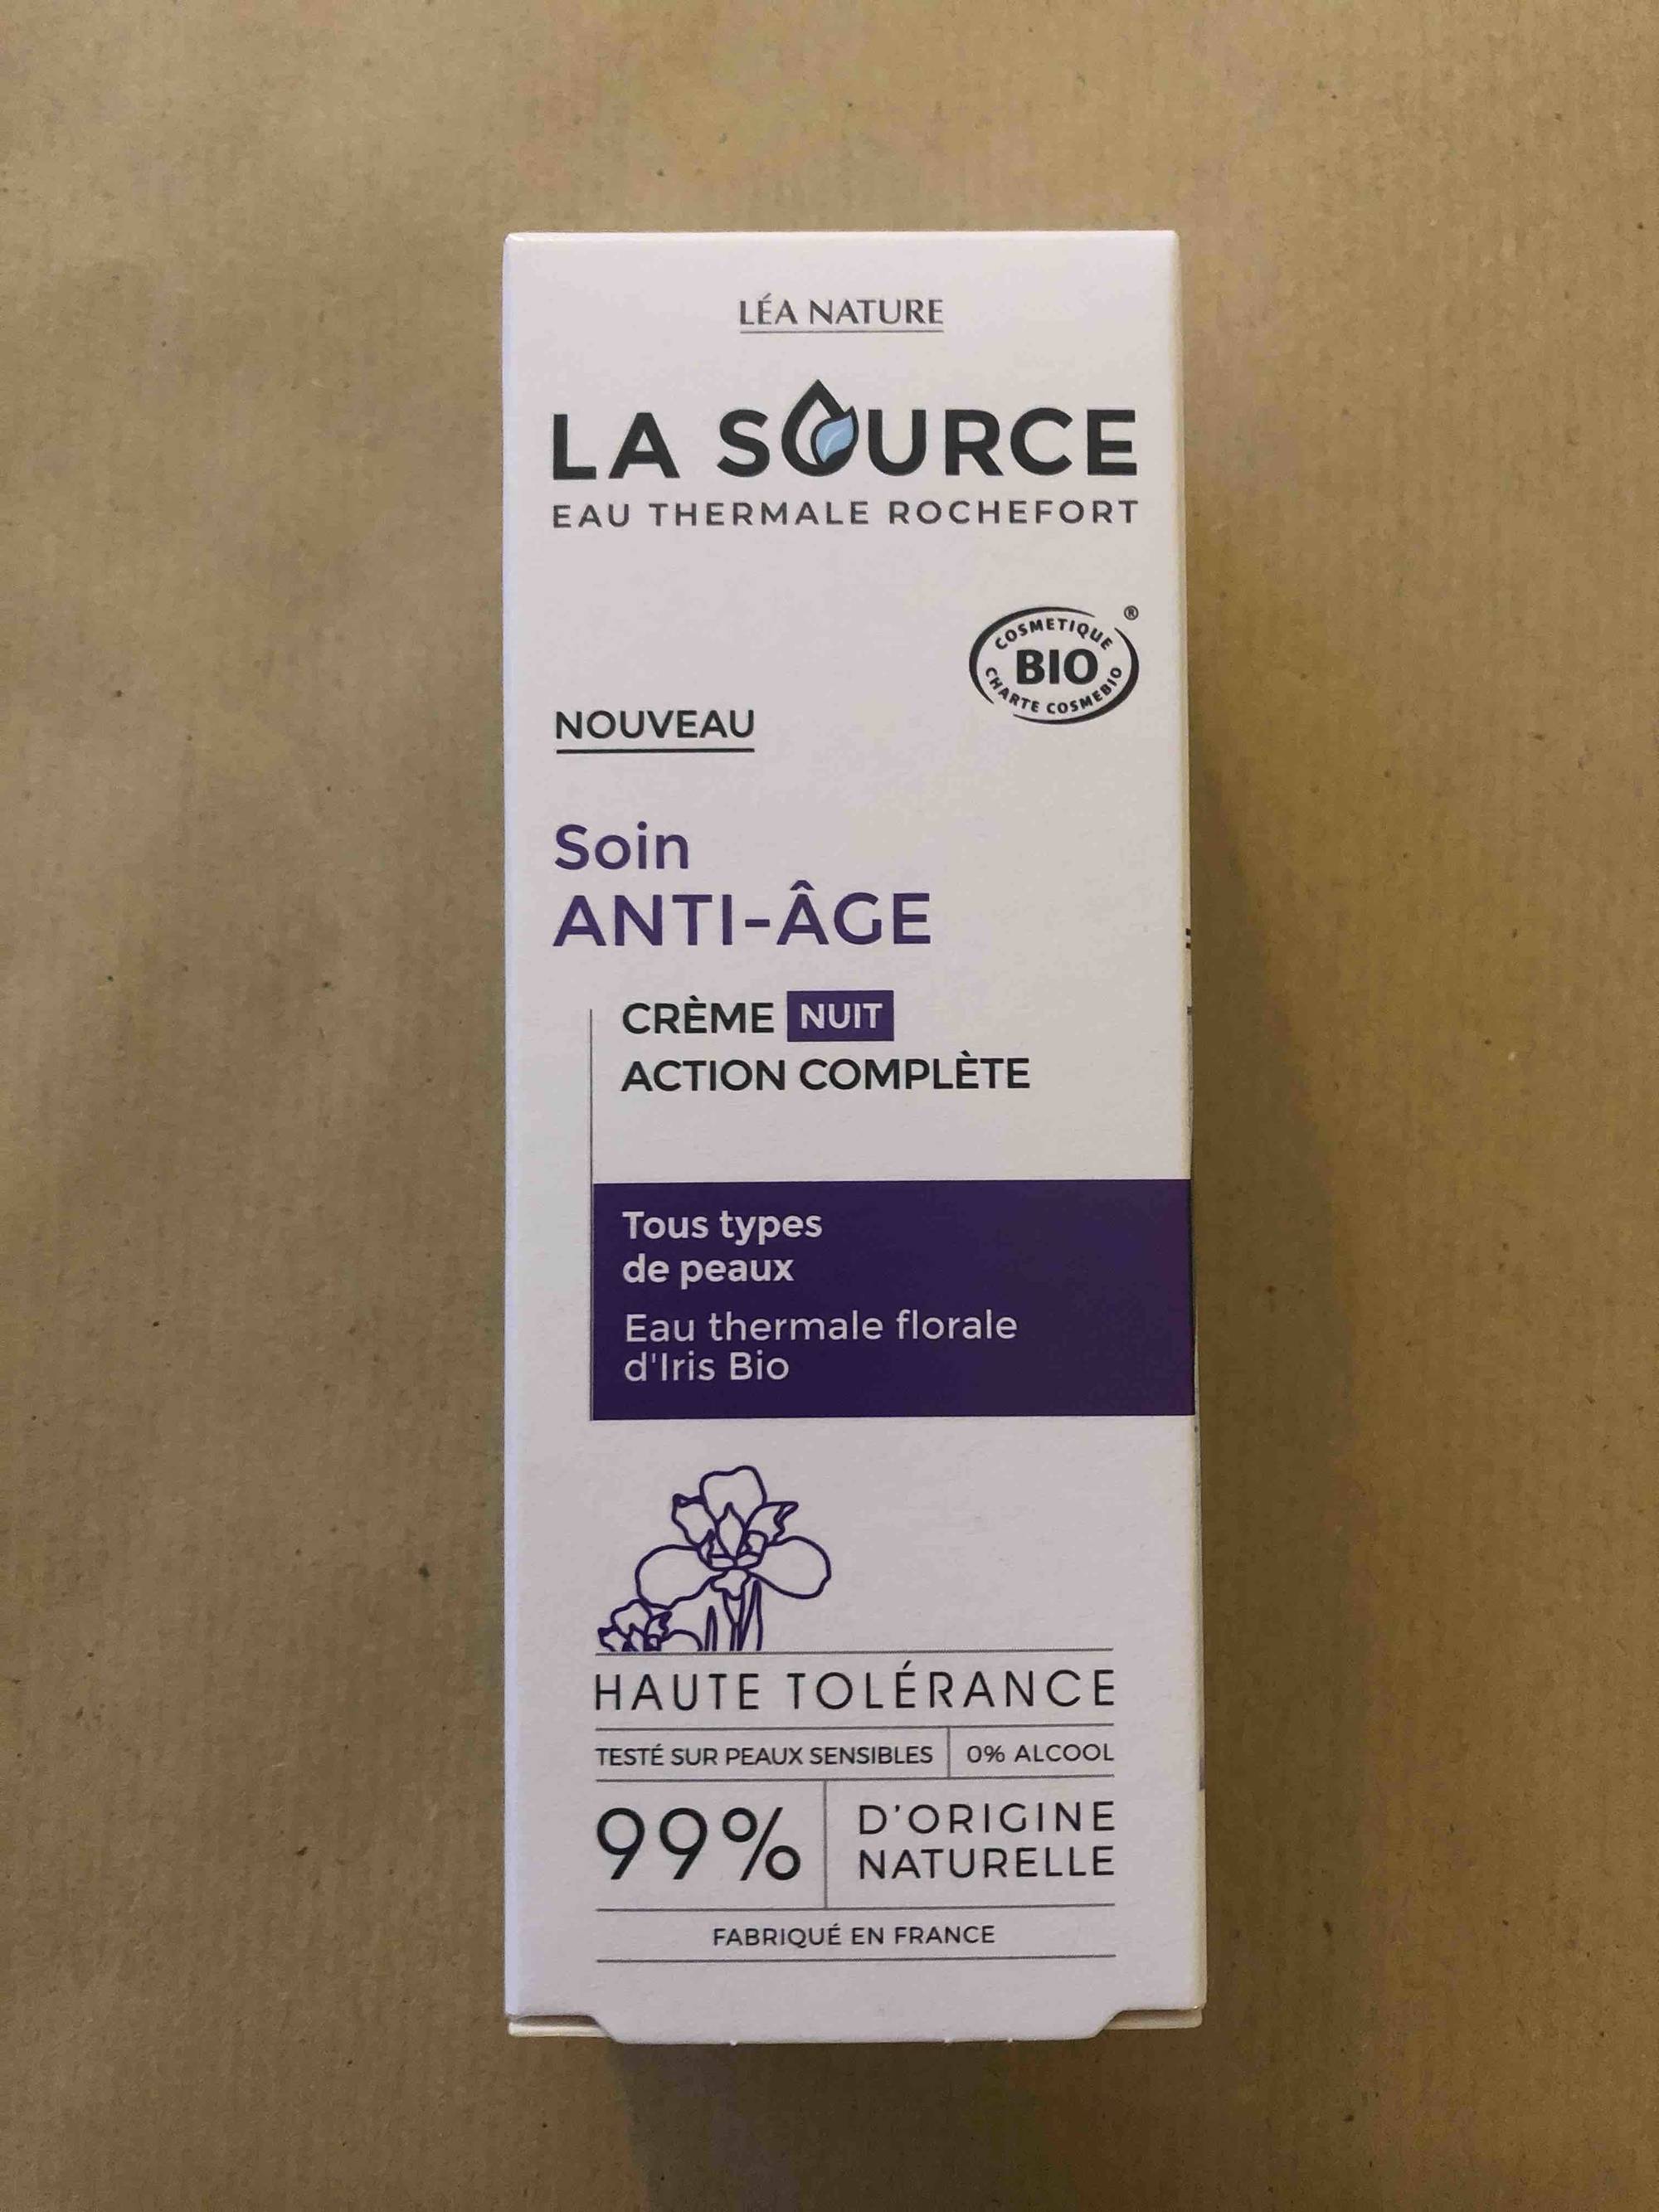 LA SOURCE EAU THERMALE ROCHEFORT - Soin anti-âge - Crème nuit action complète